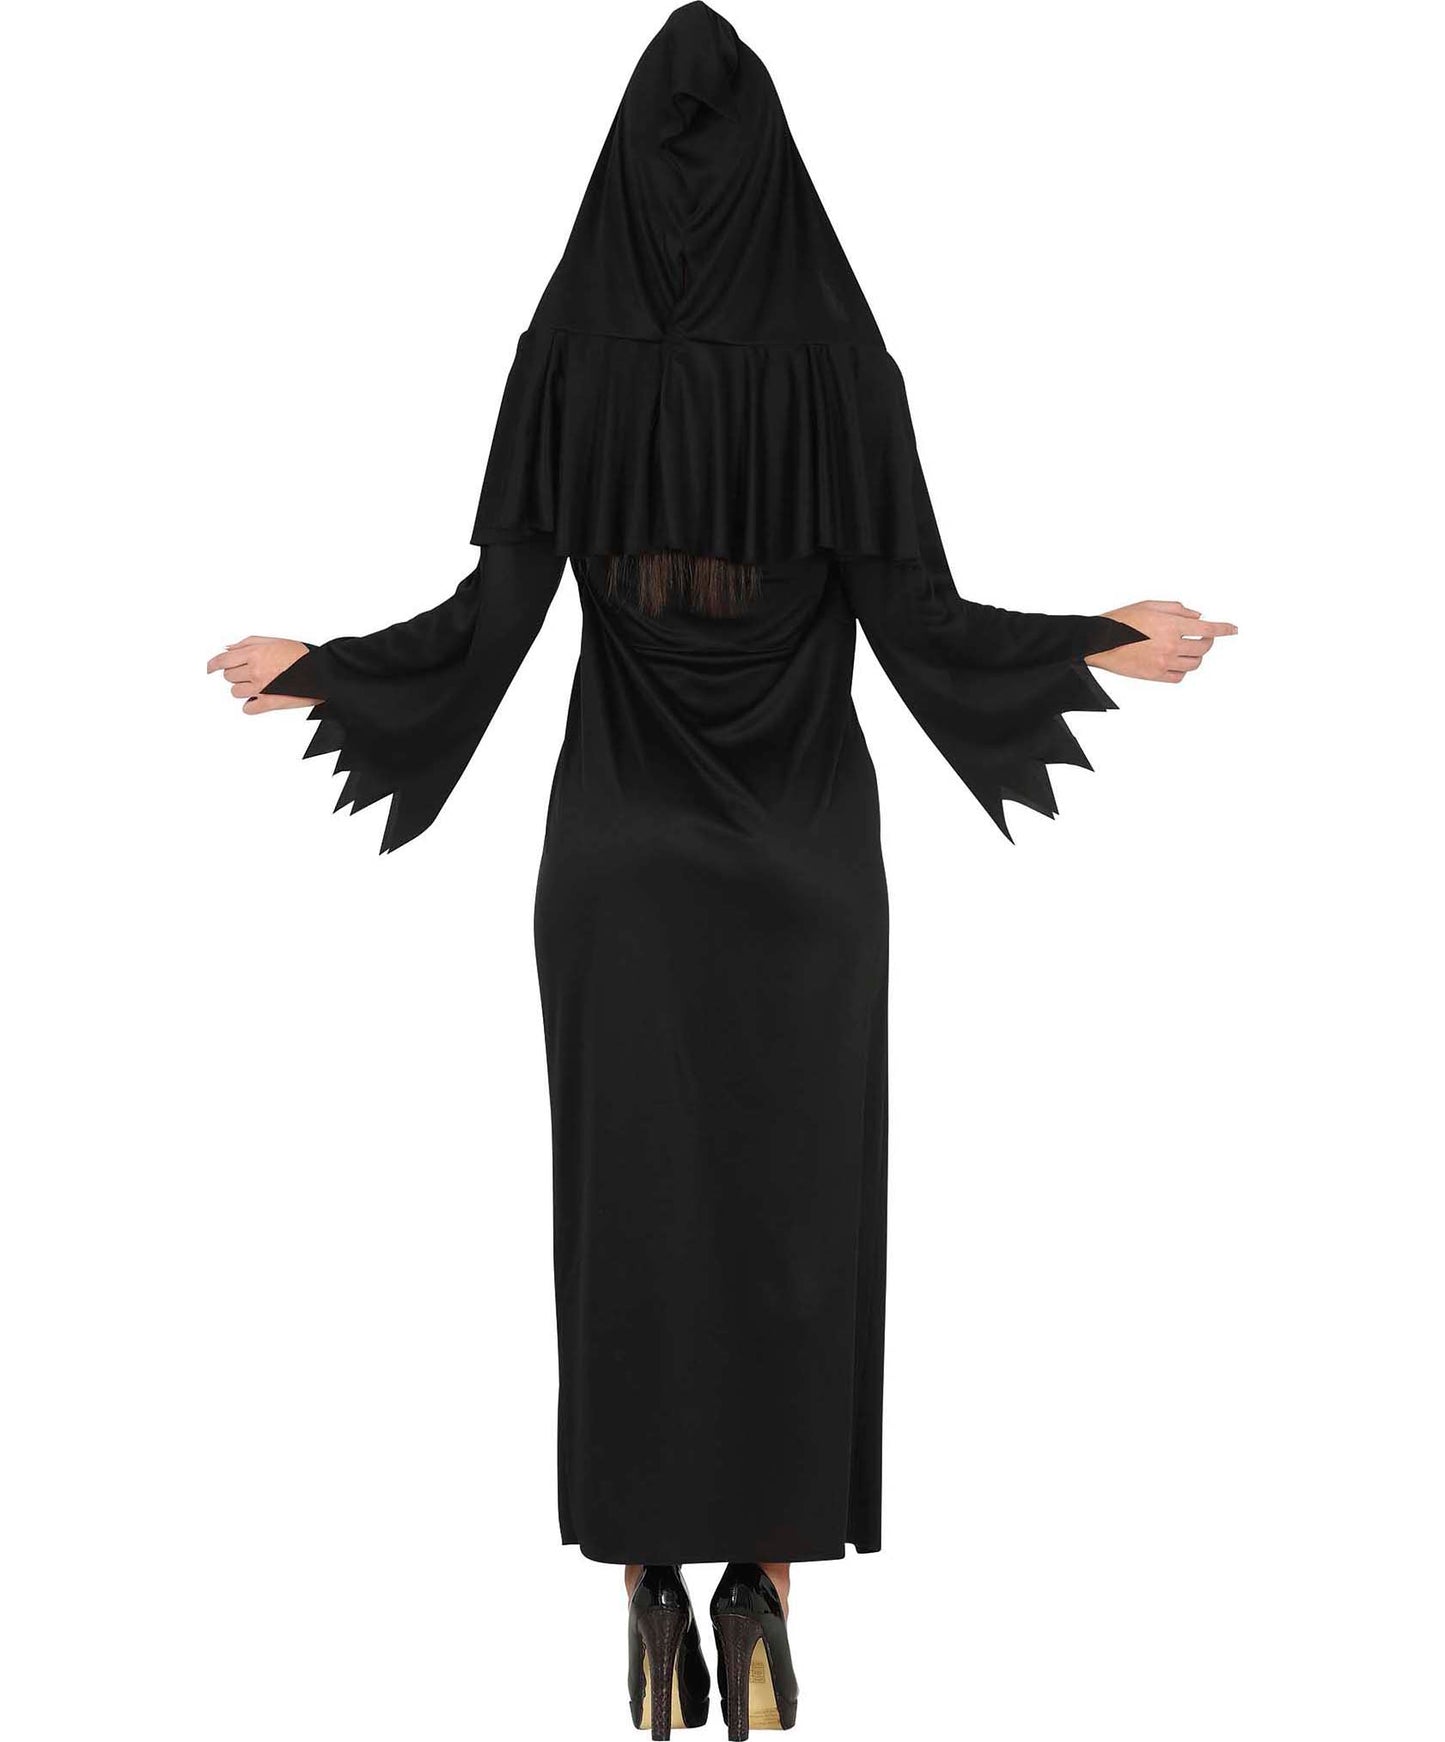 Ladies Satanic Costume